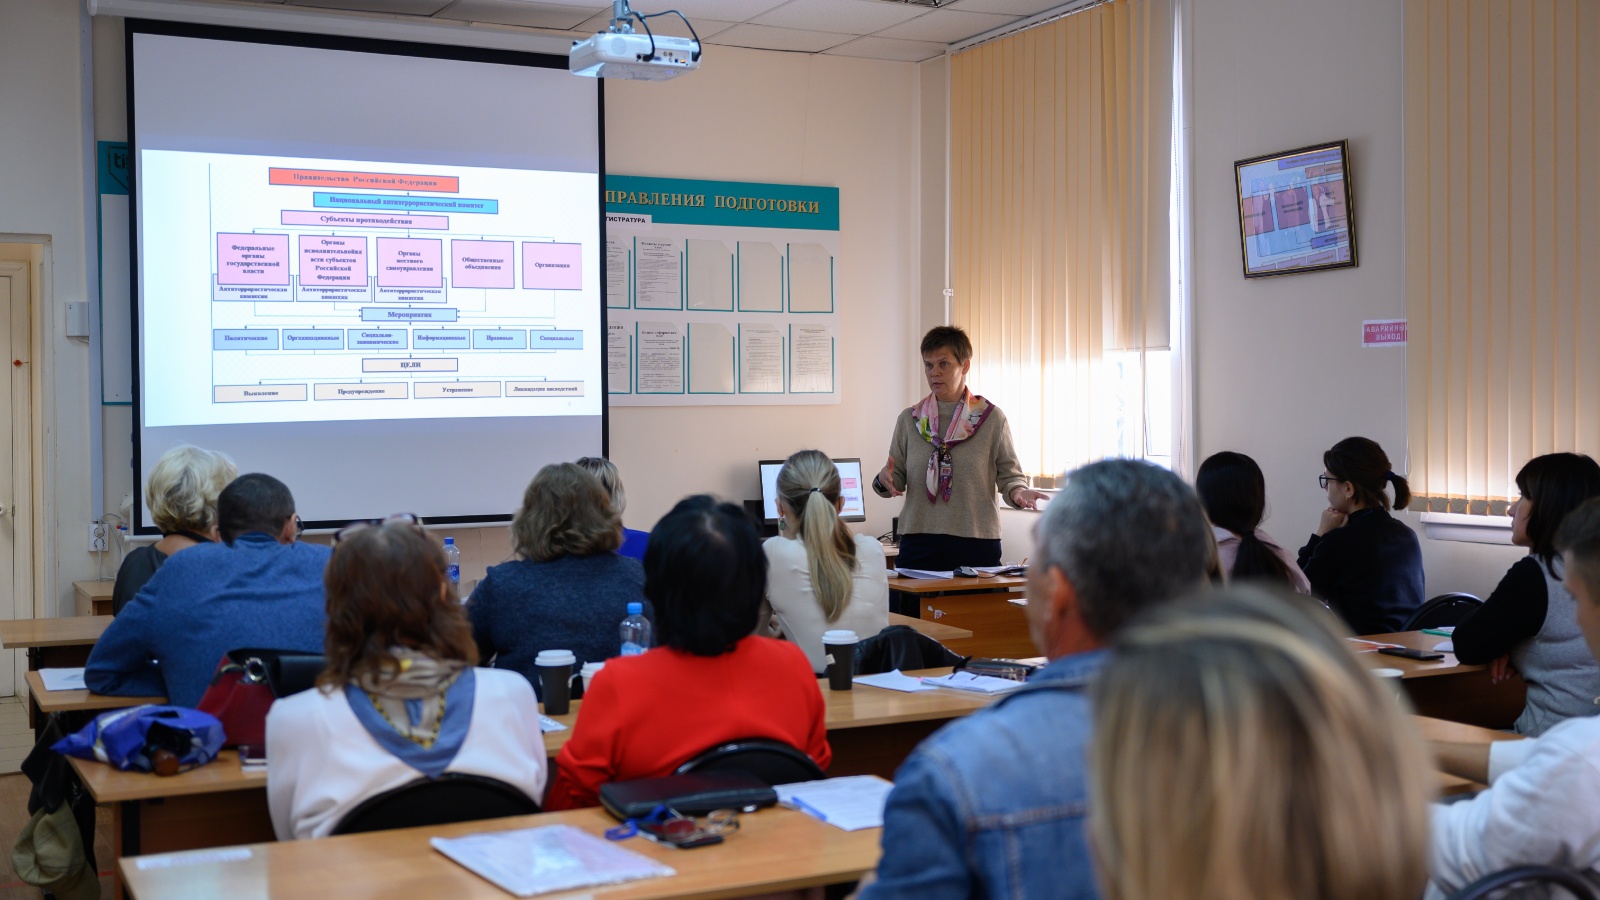 Профессиональное образование. Центр занятости проводит обучение. Ресурсные центры в Татарстане фото. Республиканский ресурсный